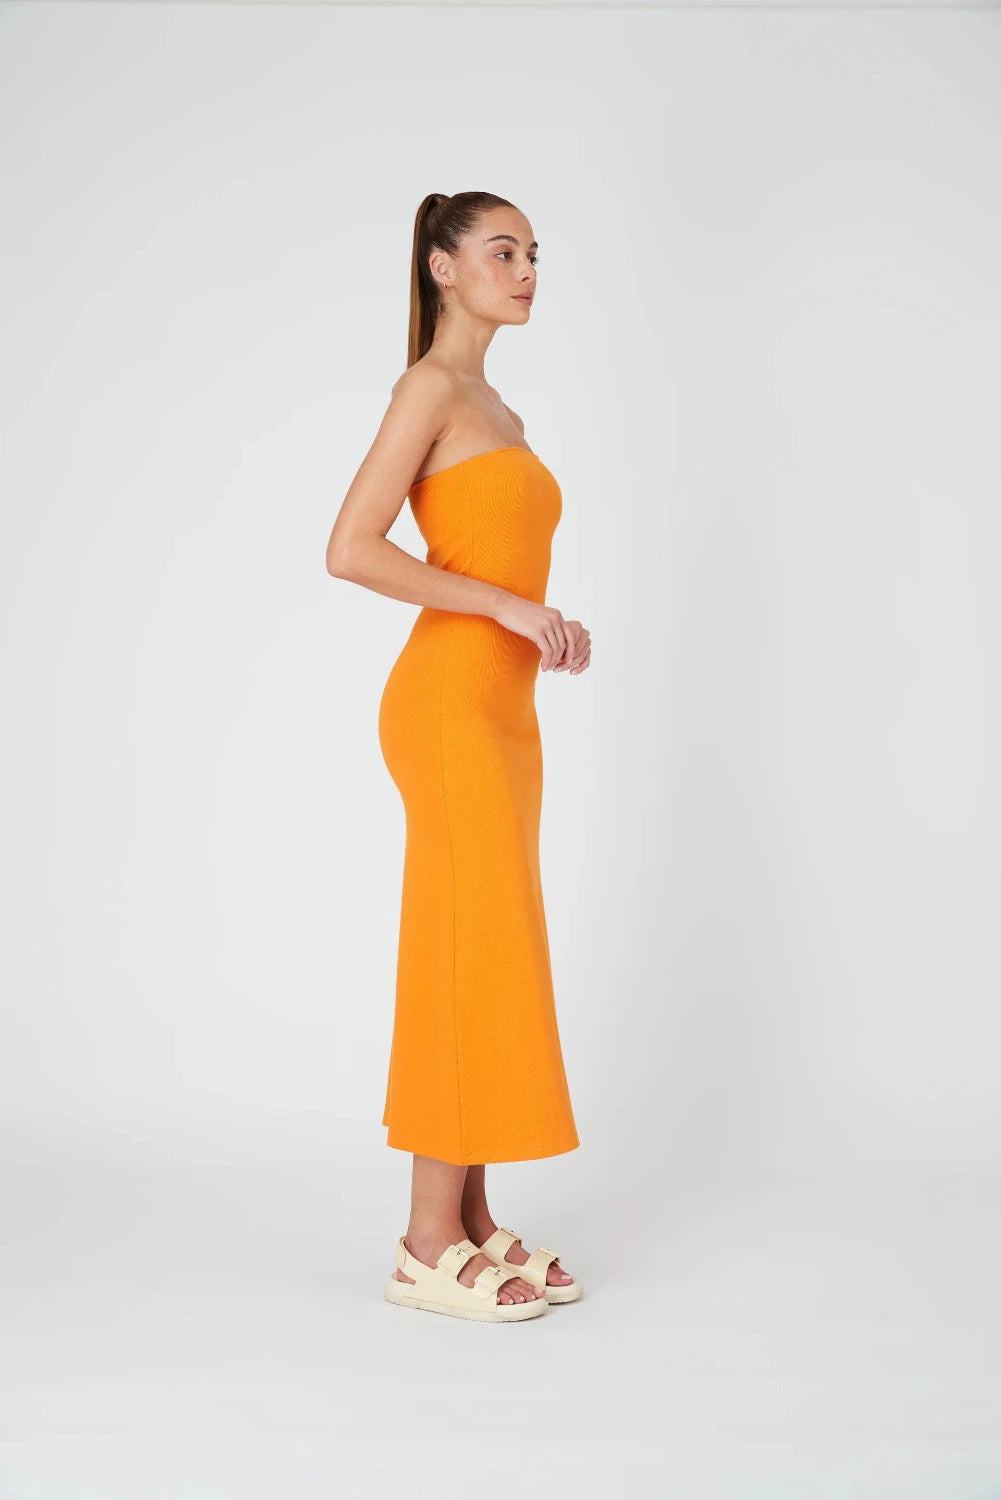 Summi Summi -  Strapless A Line Midi Dress: Tangerine